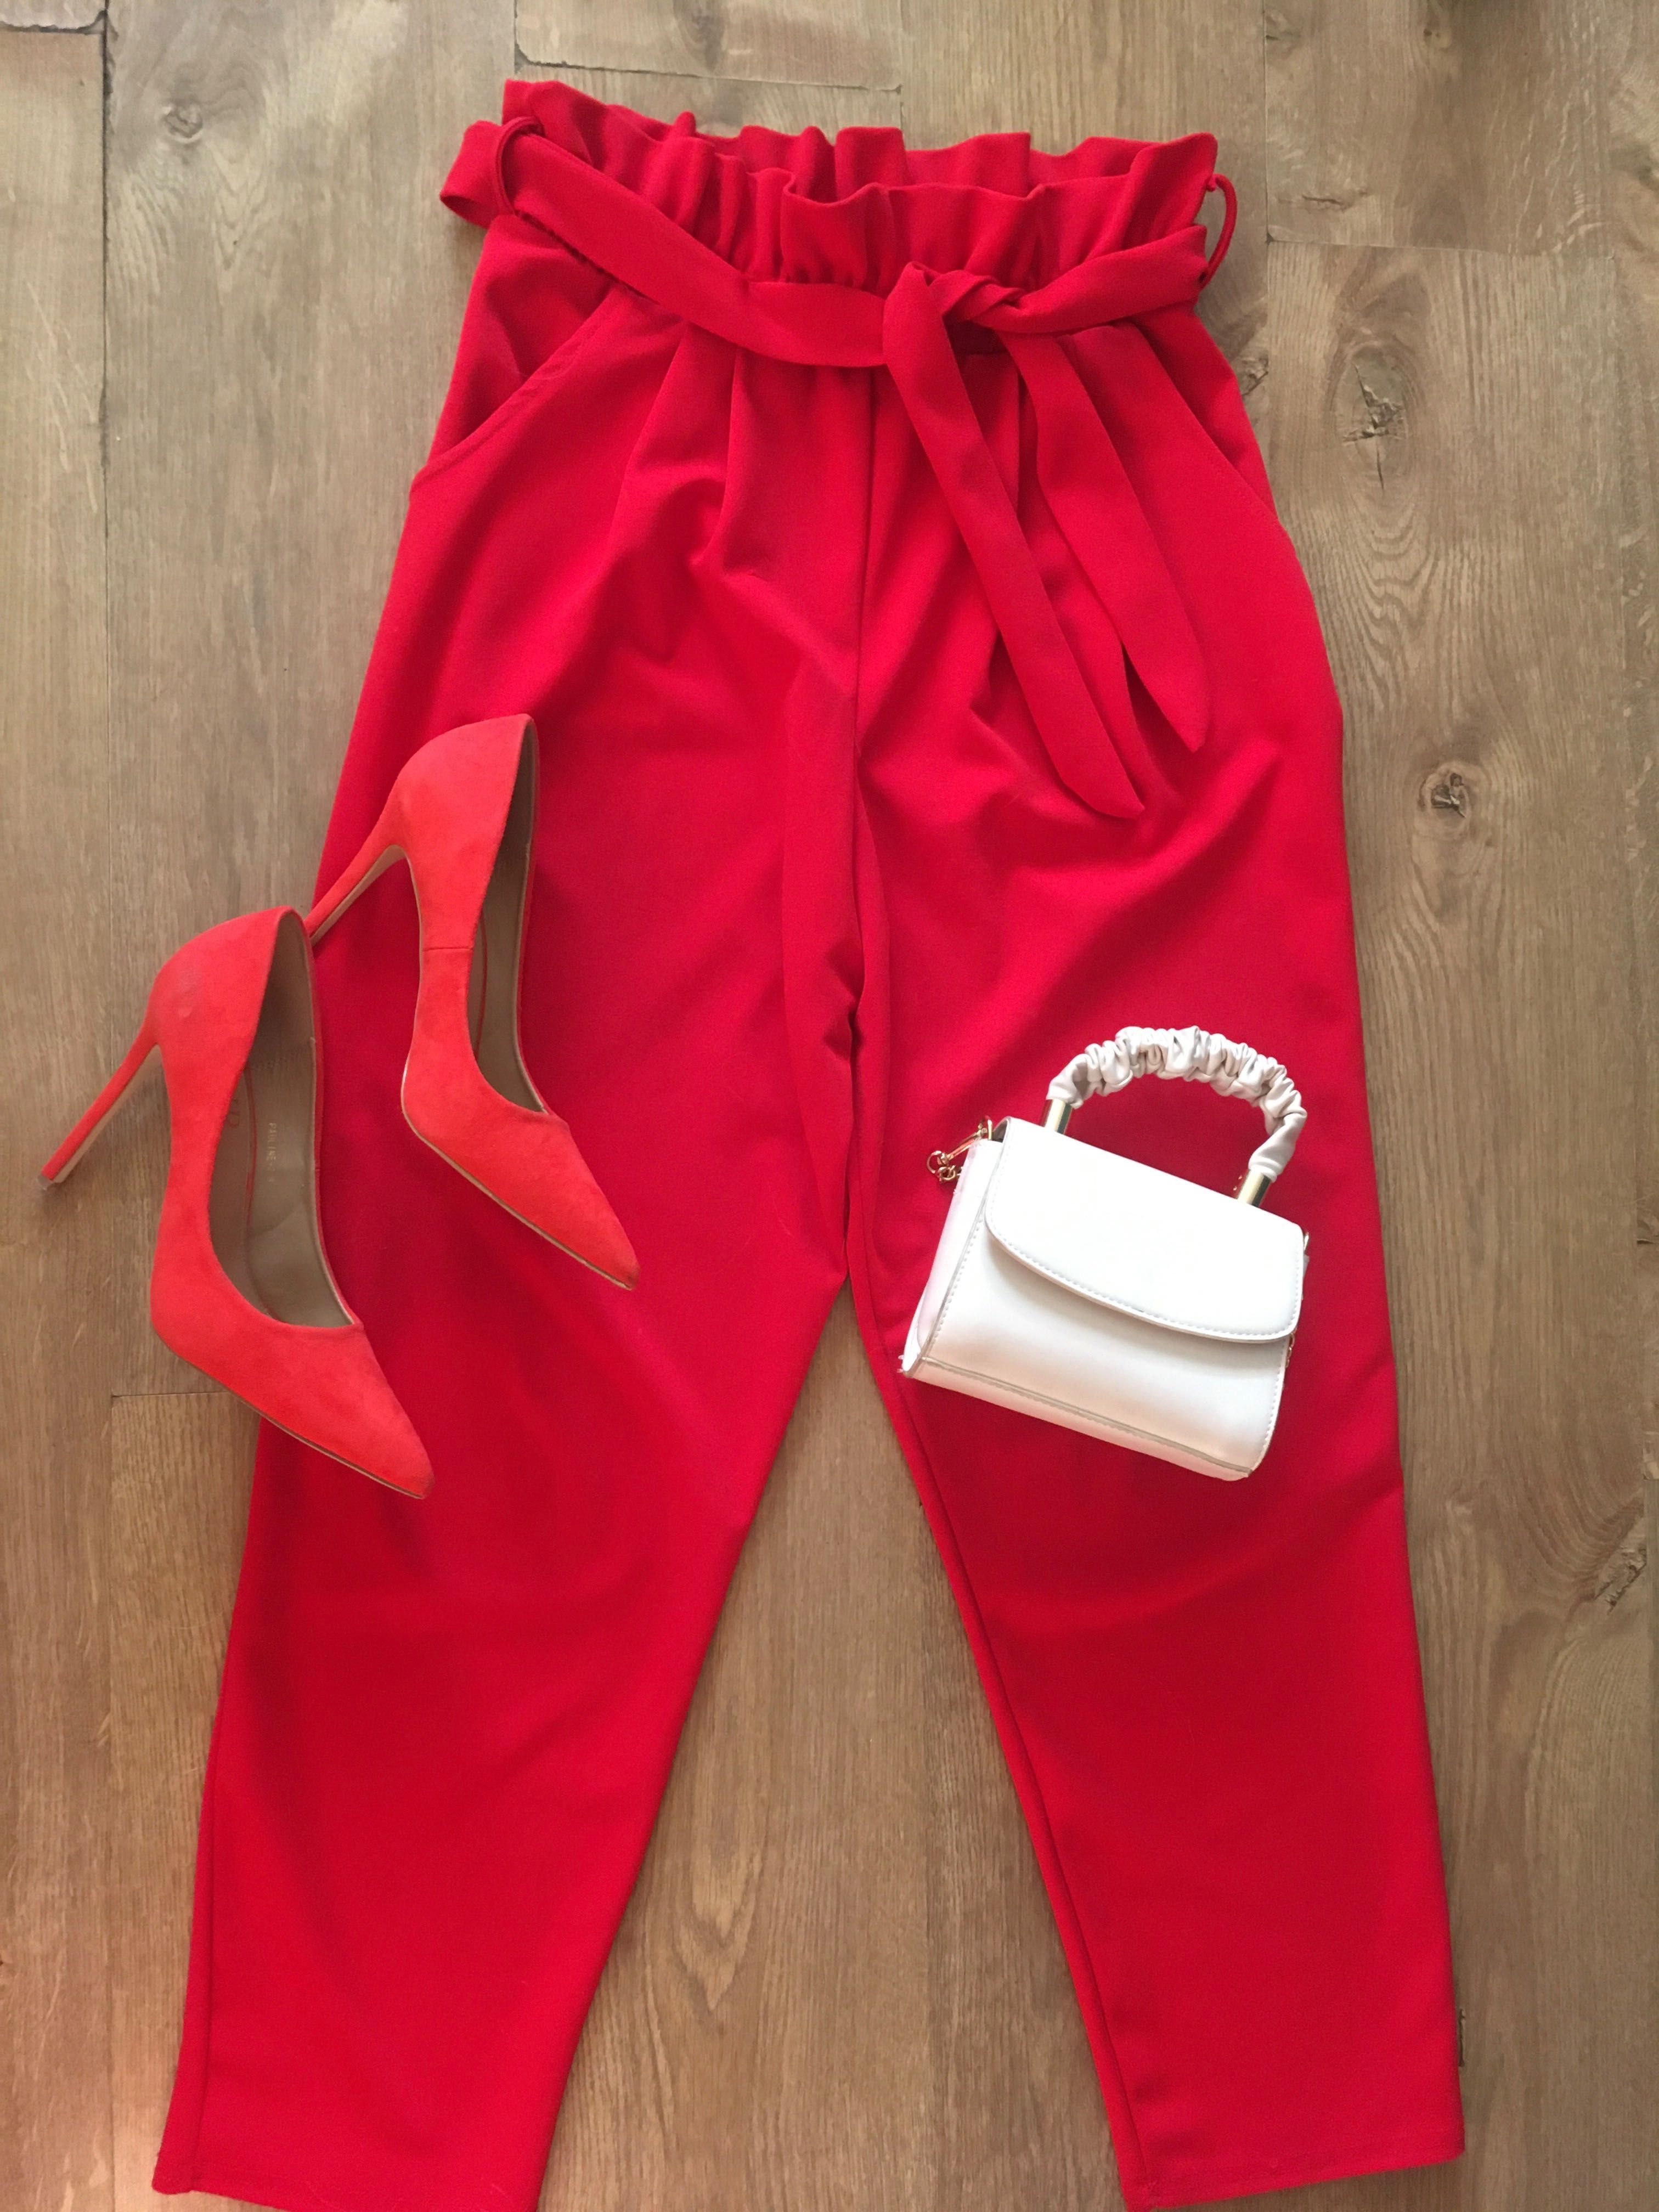 Spodnie czerwone wysoki stan materiałowe fakbanka wiązane missguided